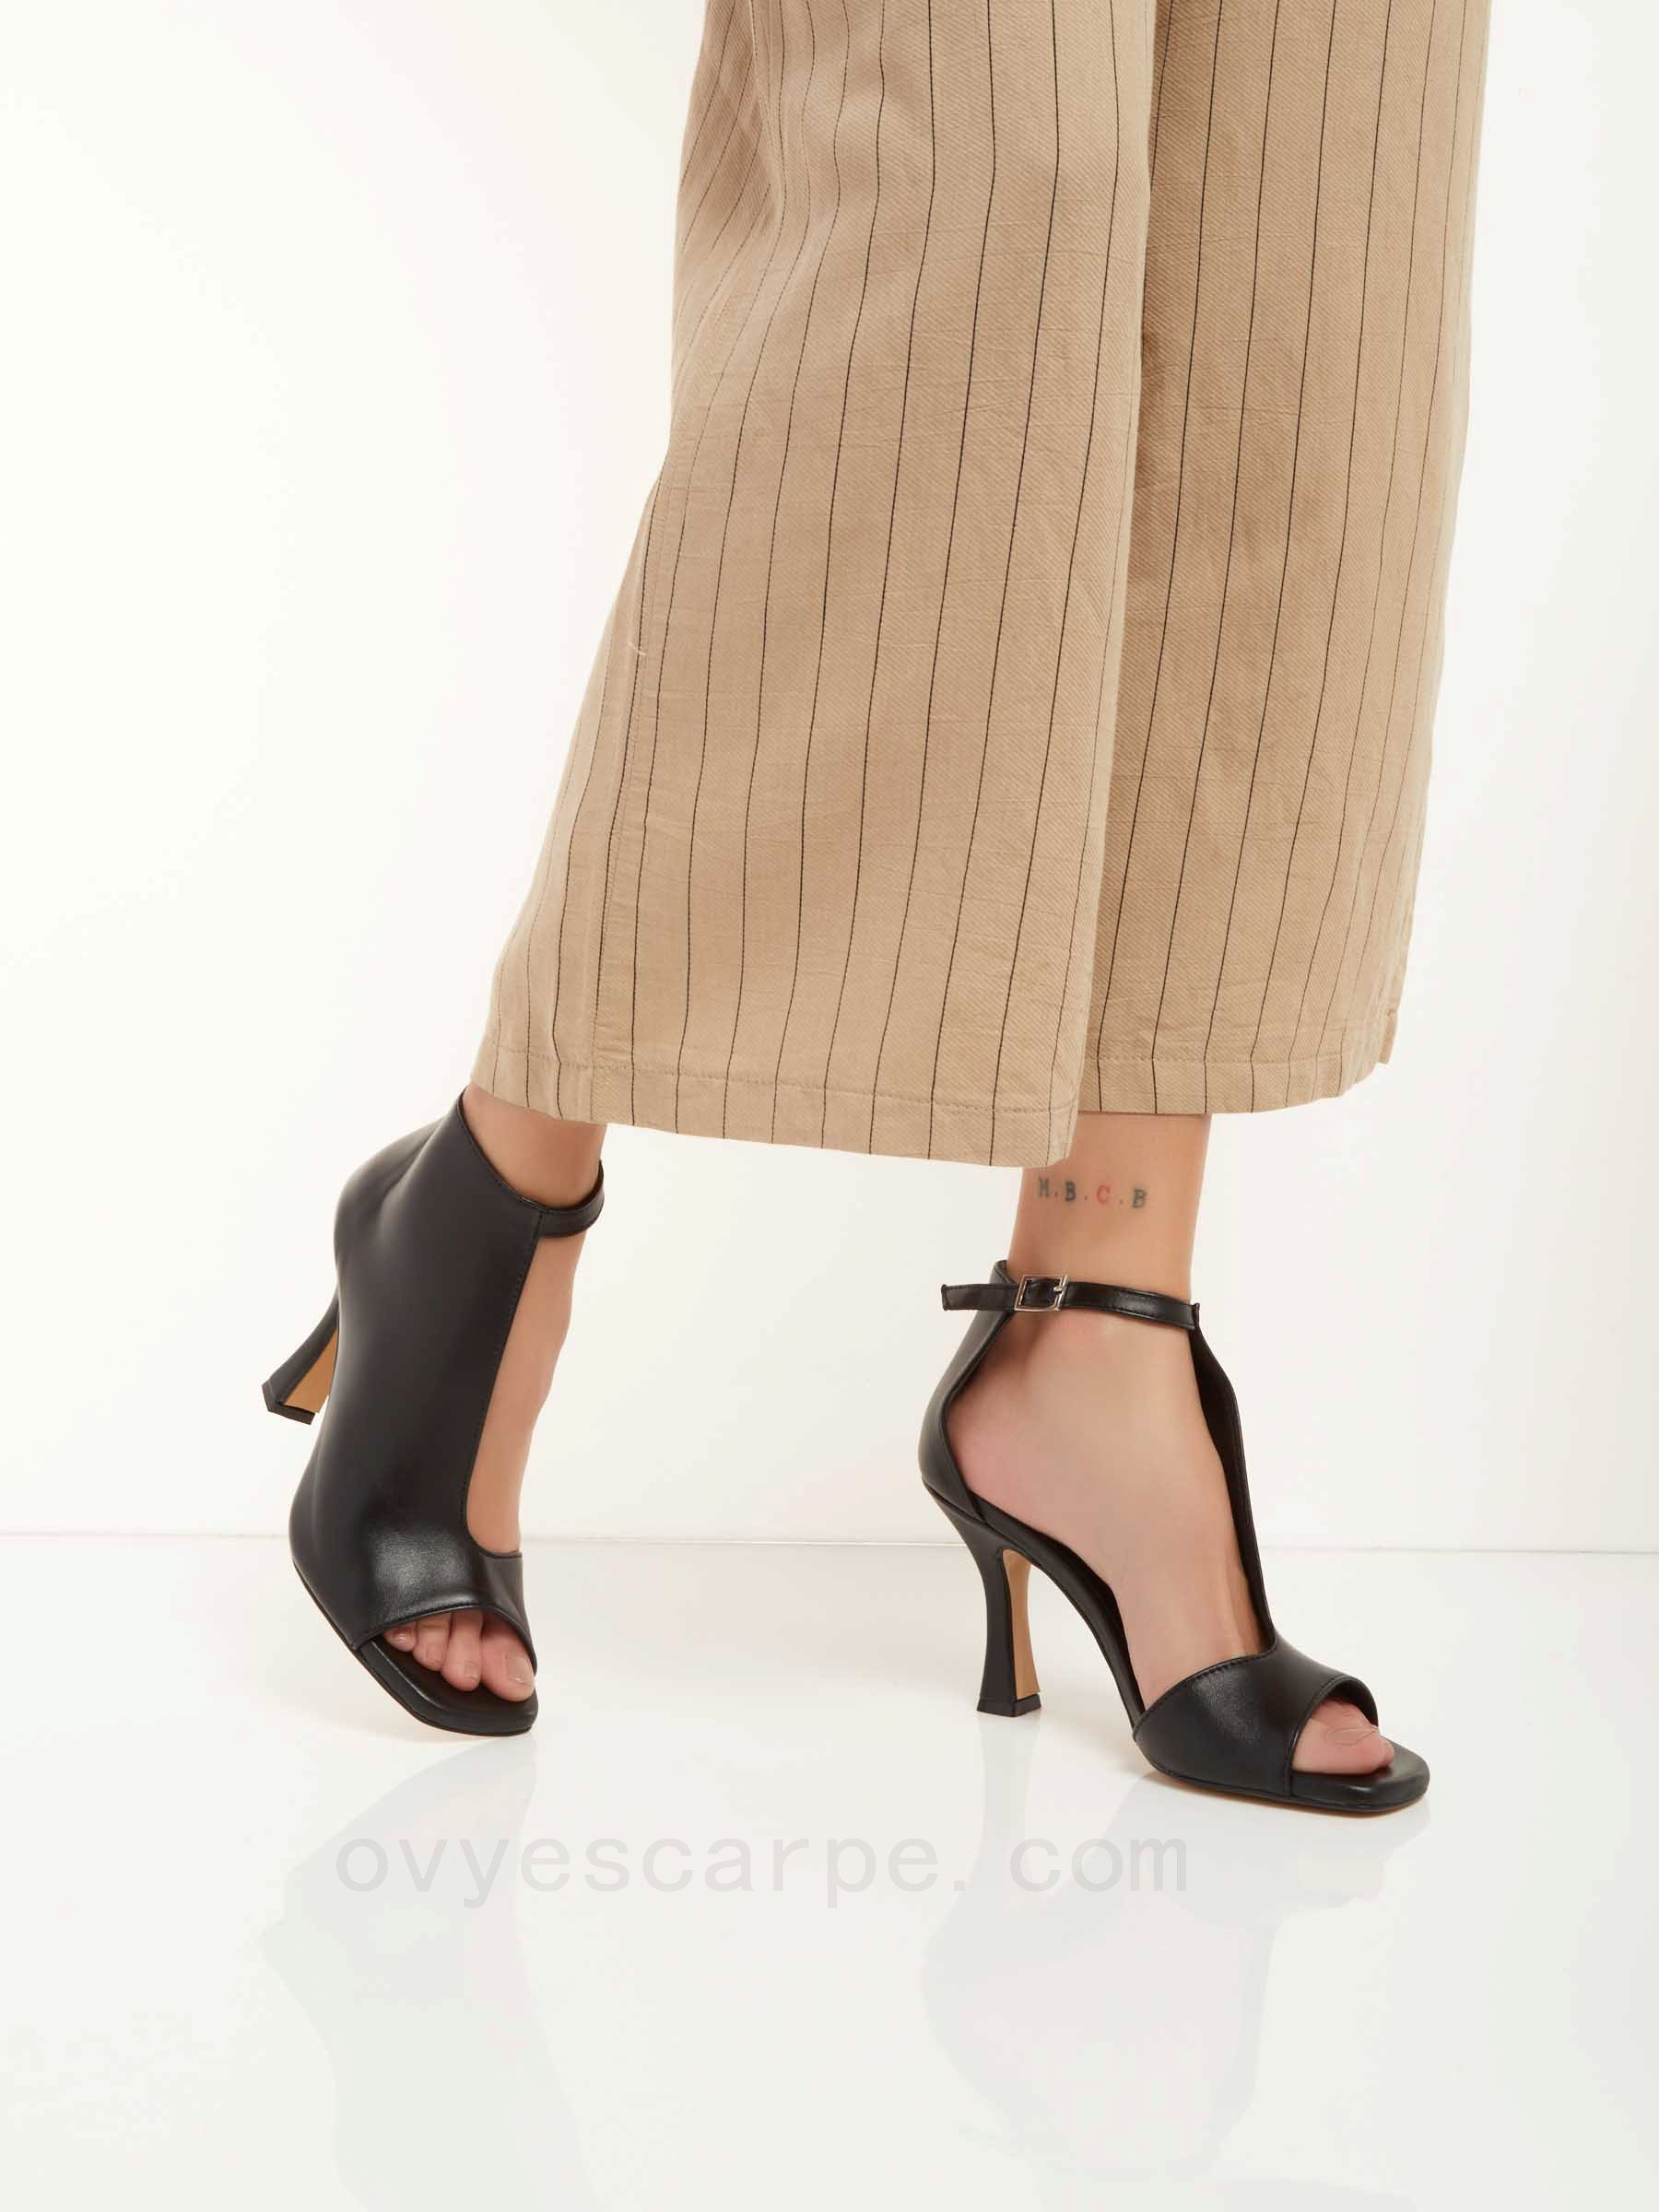 (image for) Prezzi Bassi Leather Sandals F08161027-0426 Original